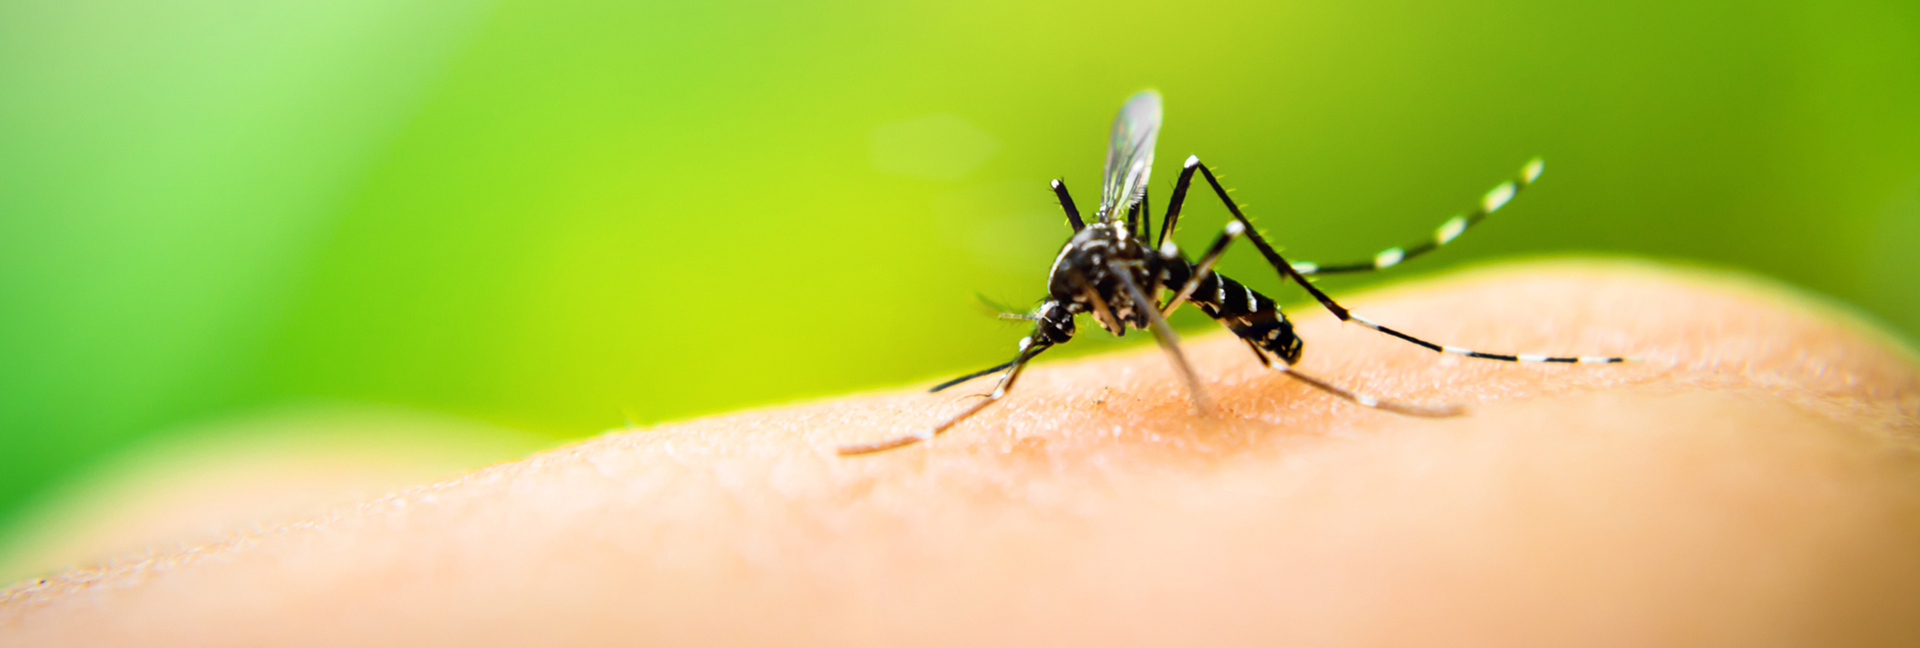 dengue mosquito picadura